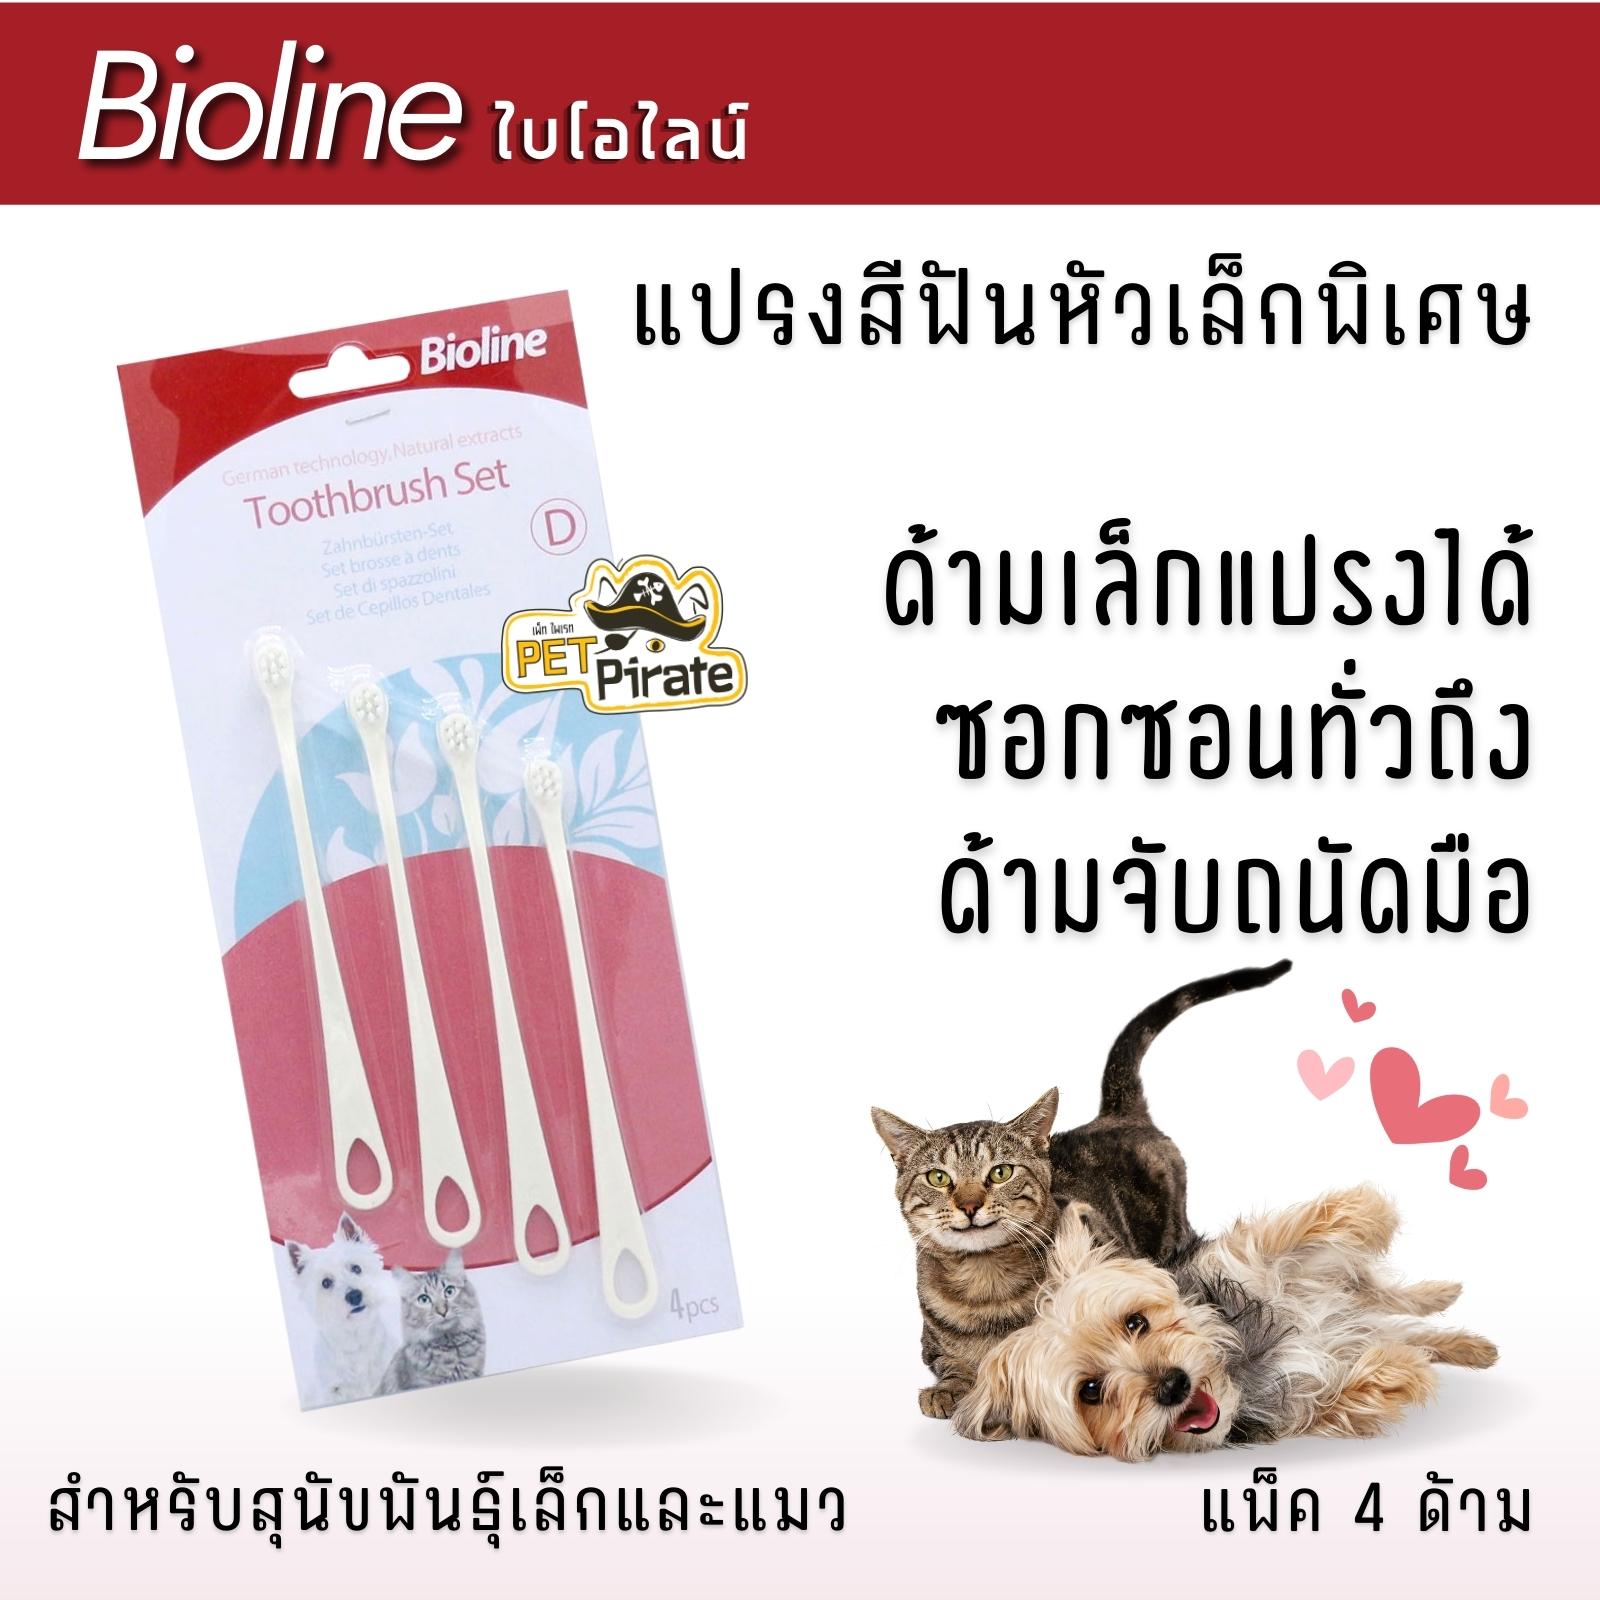 Bioline แปรงสีฟันหัวเล็กพิเศษ แพ็ค 4 อัน สำหรับสุนัขพันธุ์เล็กและแมว